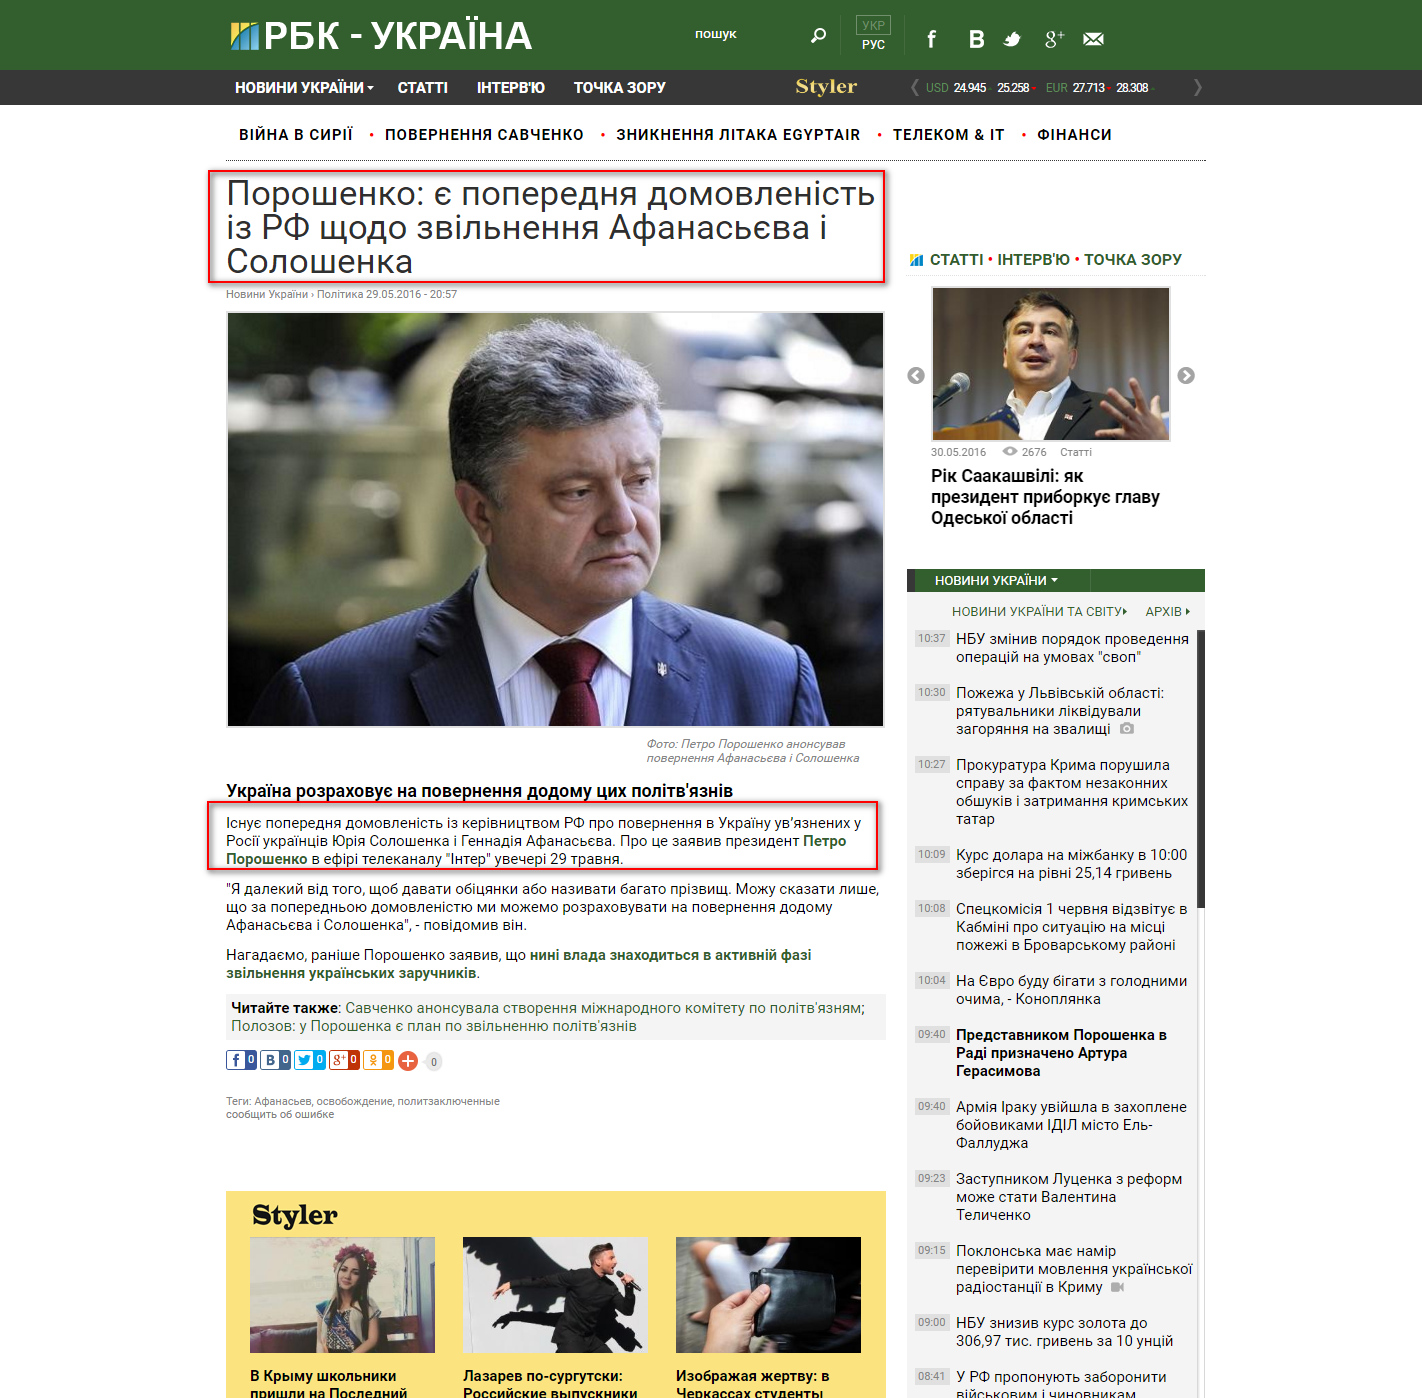 https://www.rbc.ua/ukr/news/poroshenko-predvaritelnaya-dogovorennost-1464544621.html